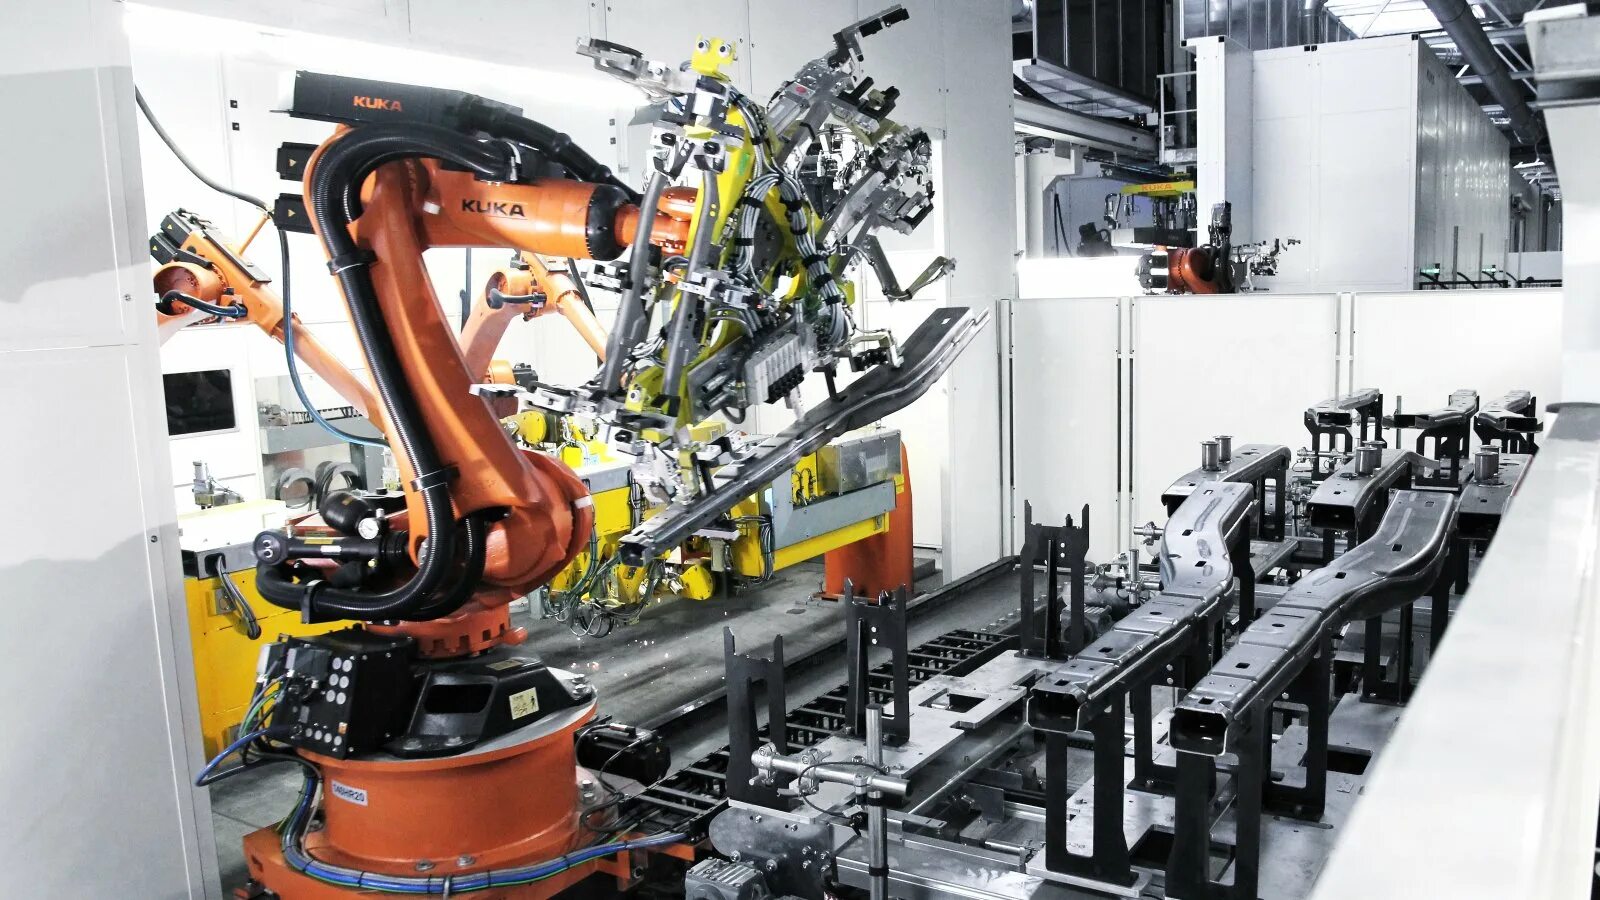 Автоматизированное производство сообщение. Kuka Robot конвейер. Kuka работотизтрованый участок. Роботизированный Технологический комплекс РТК. Kuka промышленные роботы Тесла.